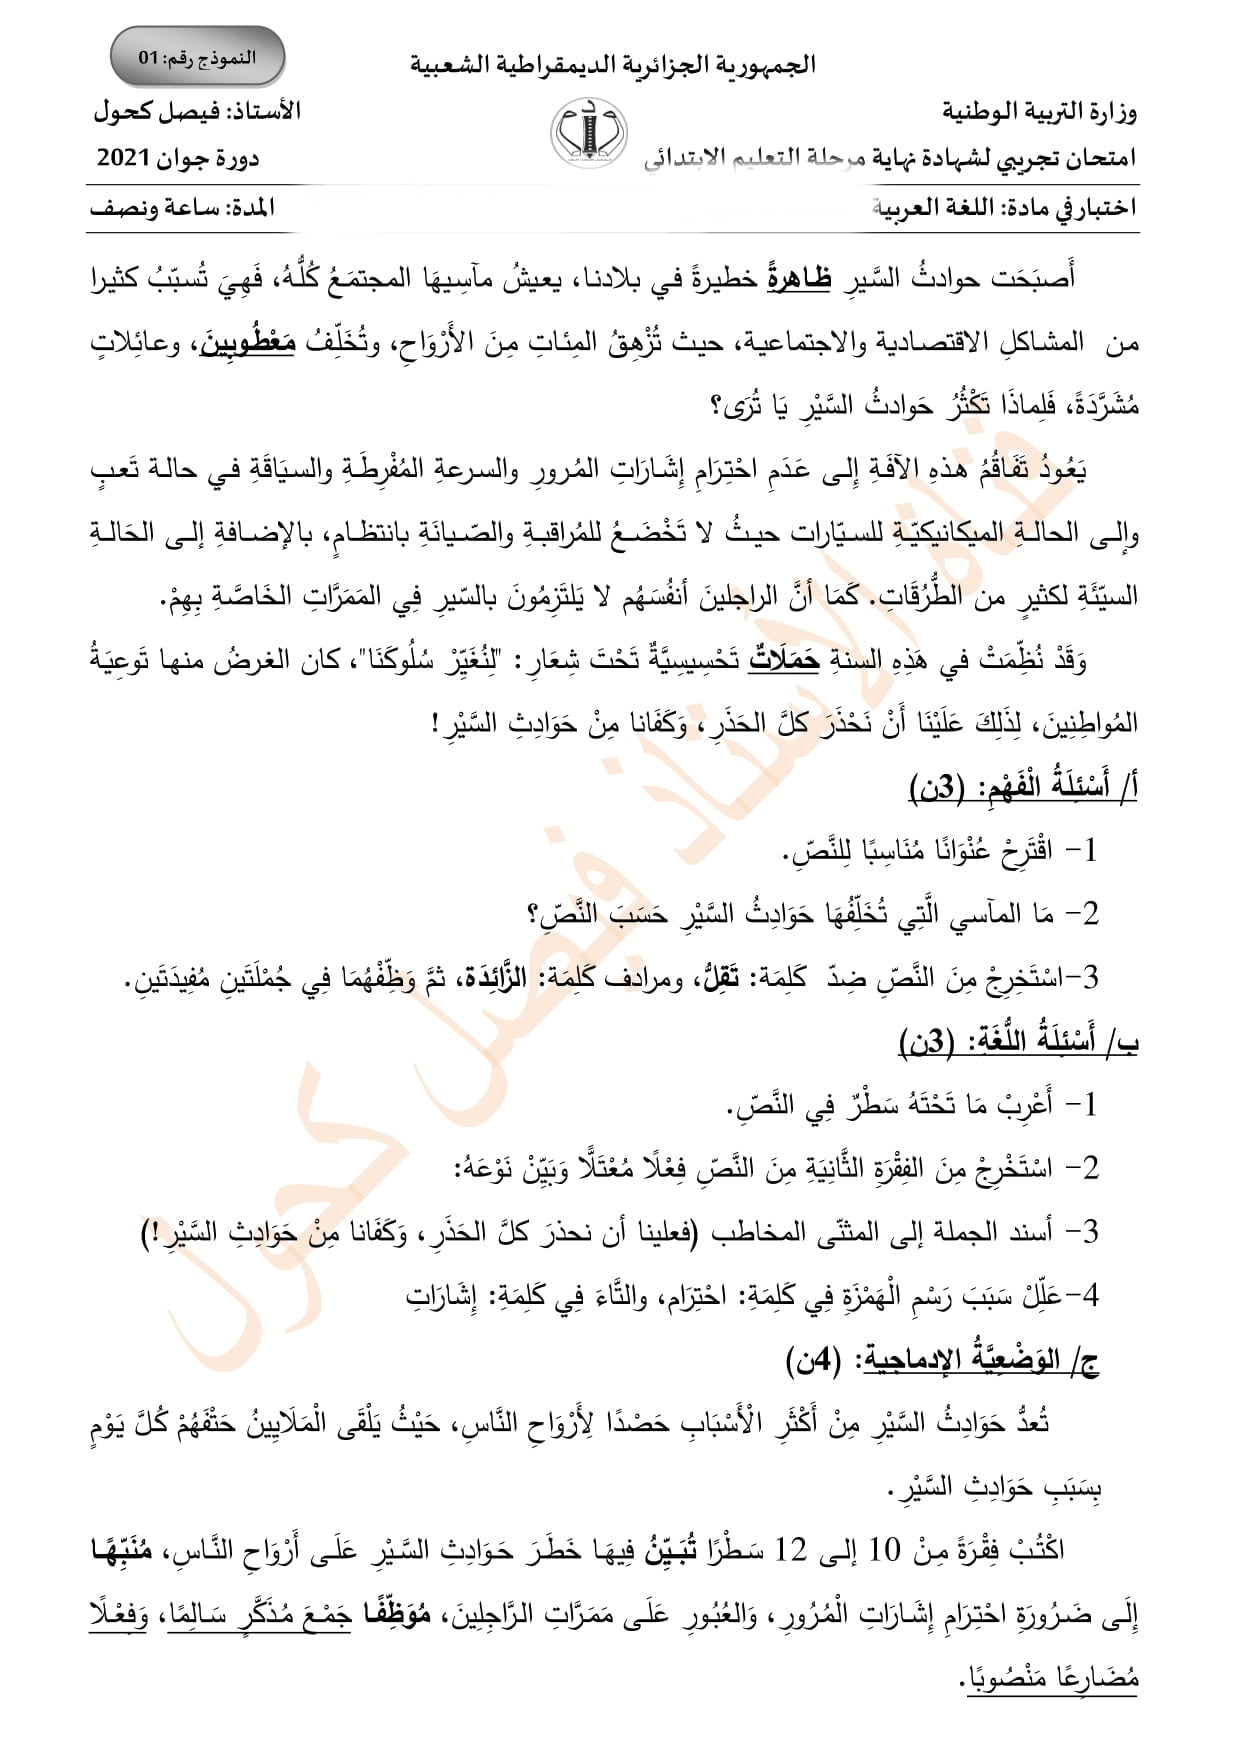 اختبار تجريبي في مادة اللغة العربية لامتحان شهادة التعليم الابتدائي 2021 نموذج رقم 2